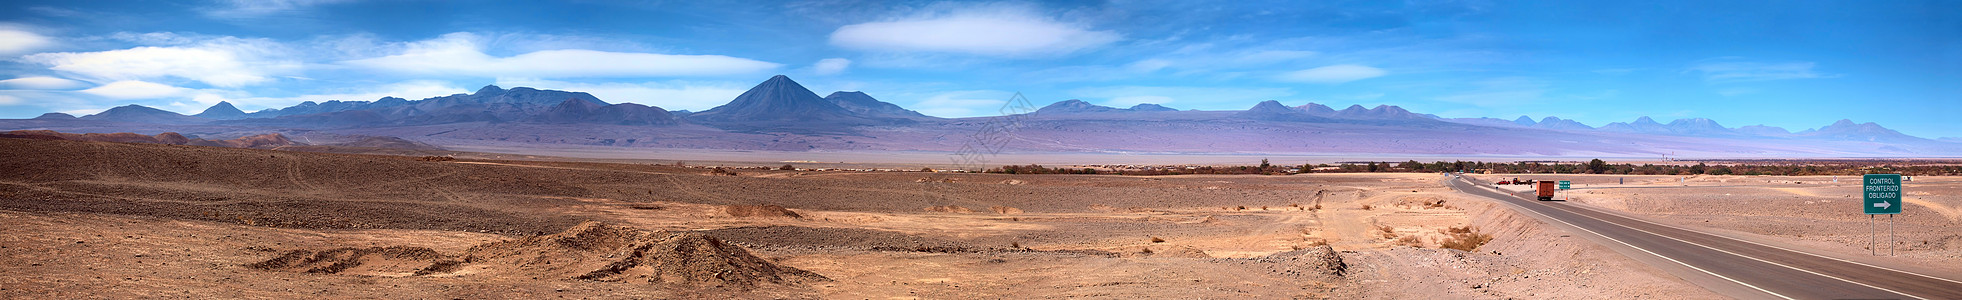 智利佩德罗德阿塔卡马的全景图片